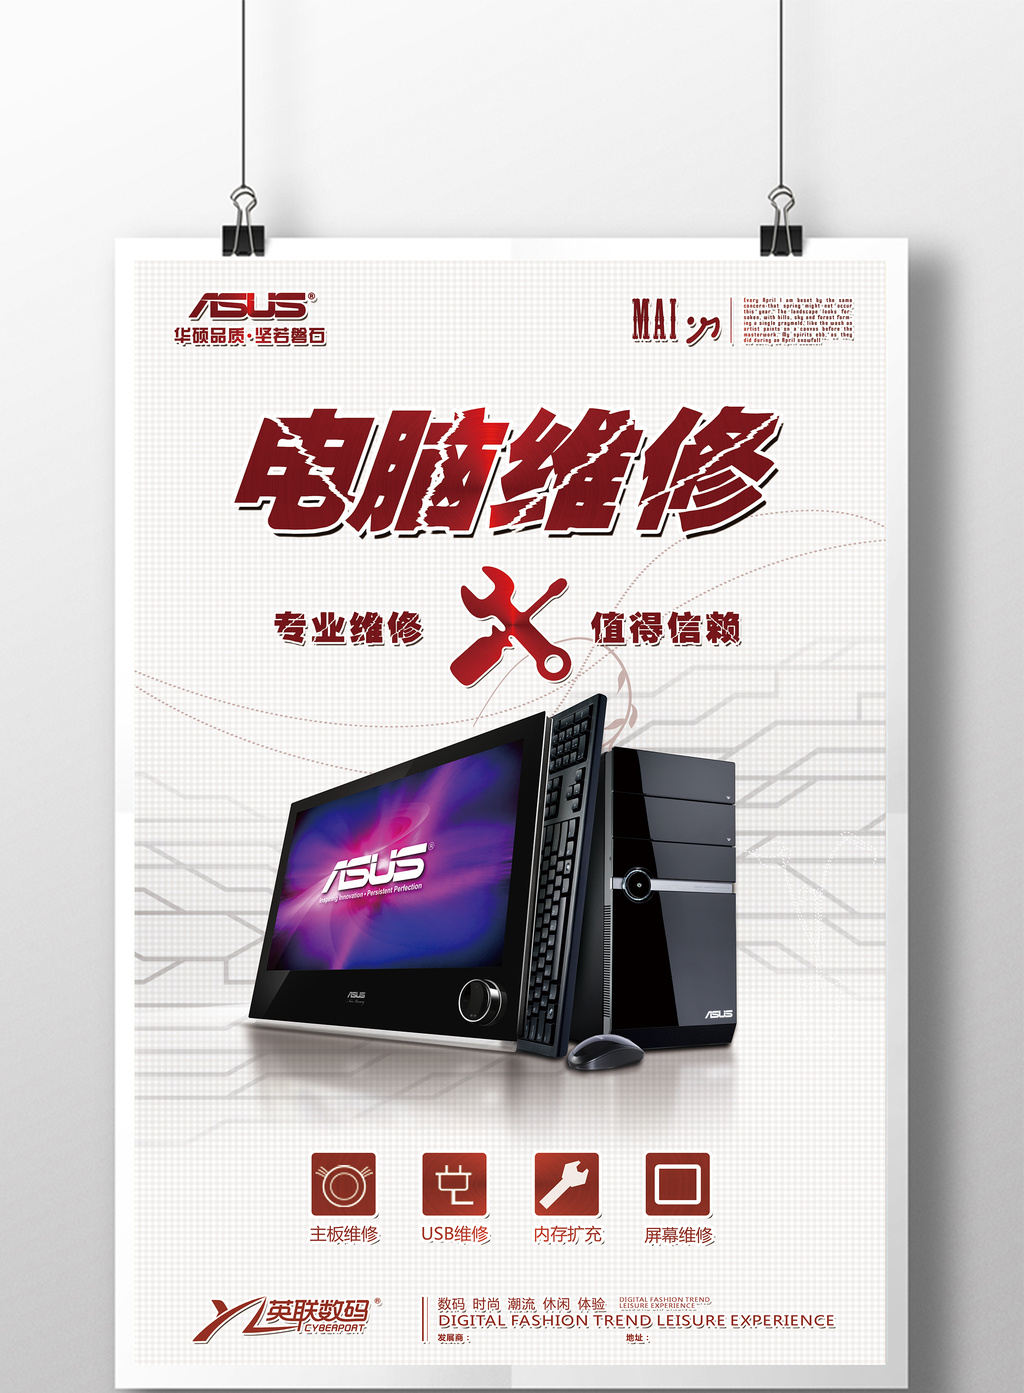 简洁大气电脑电子产品维修海报模板免费下载 _广告设计图片设计素材